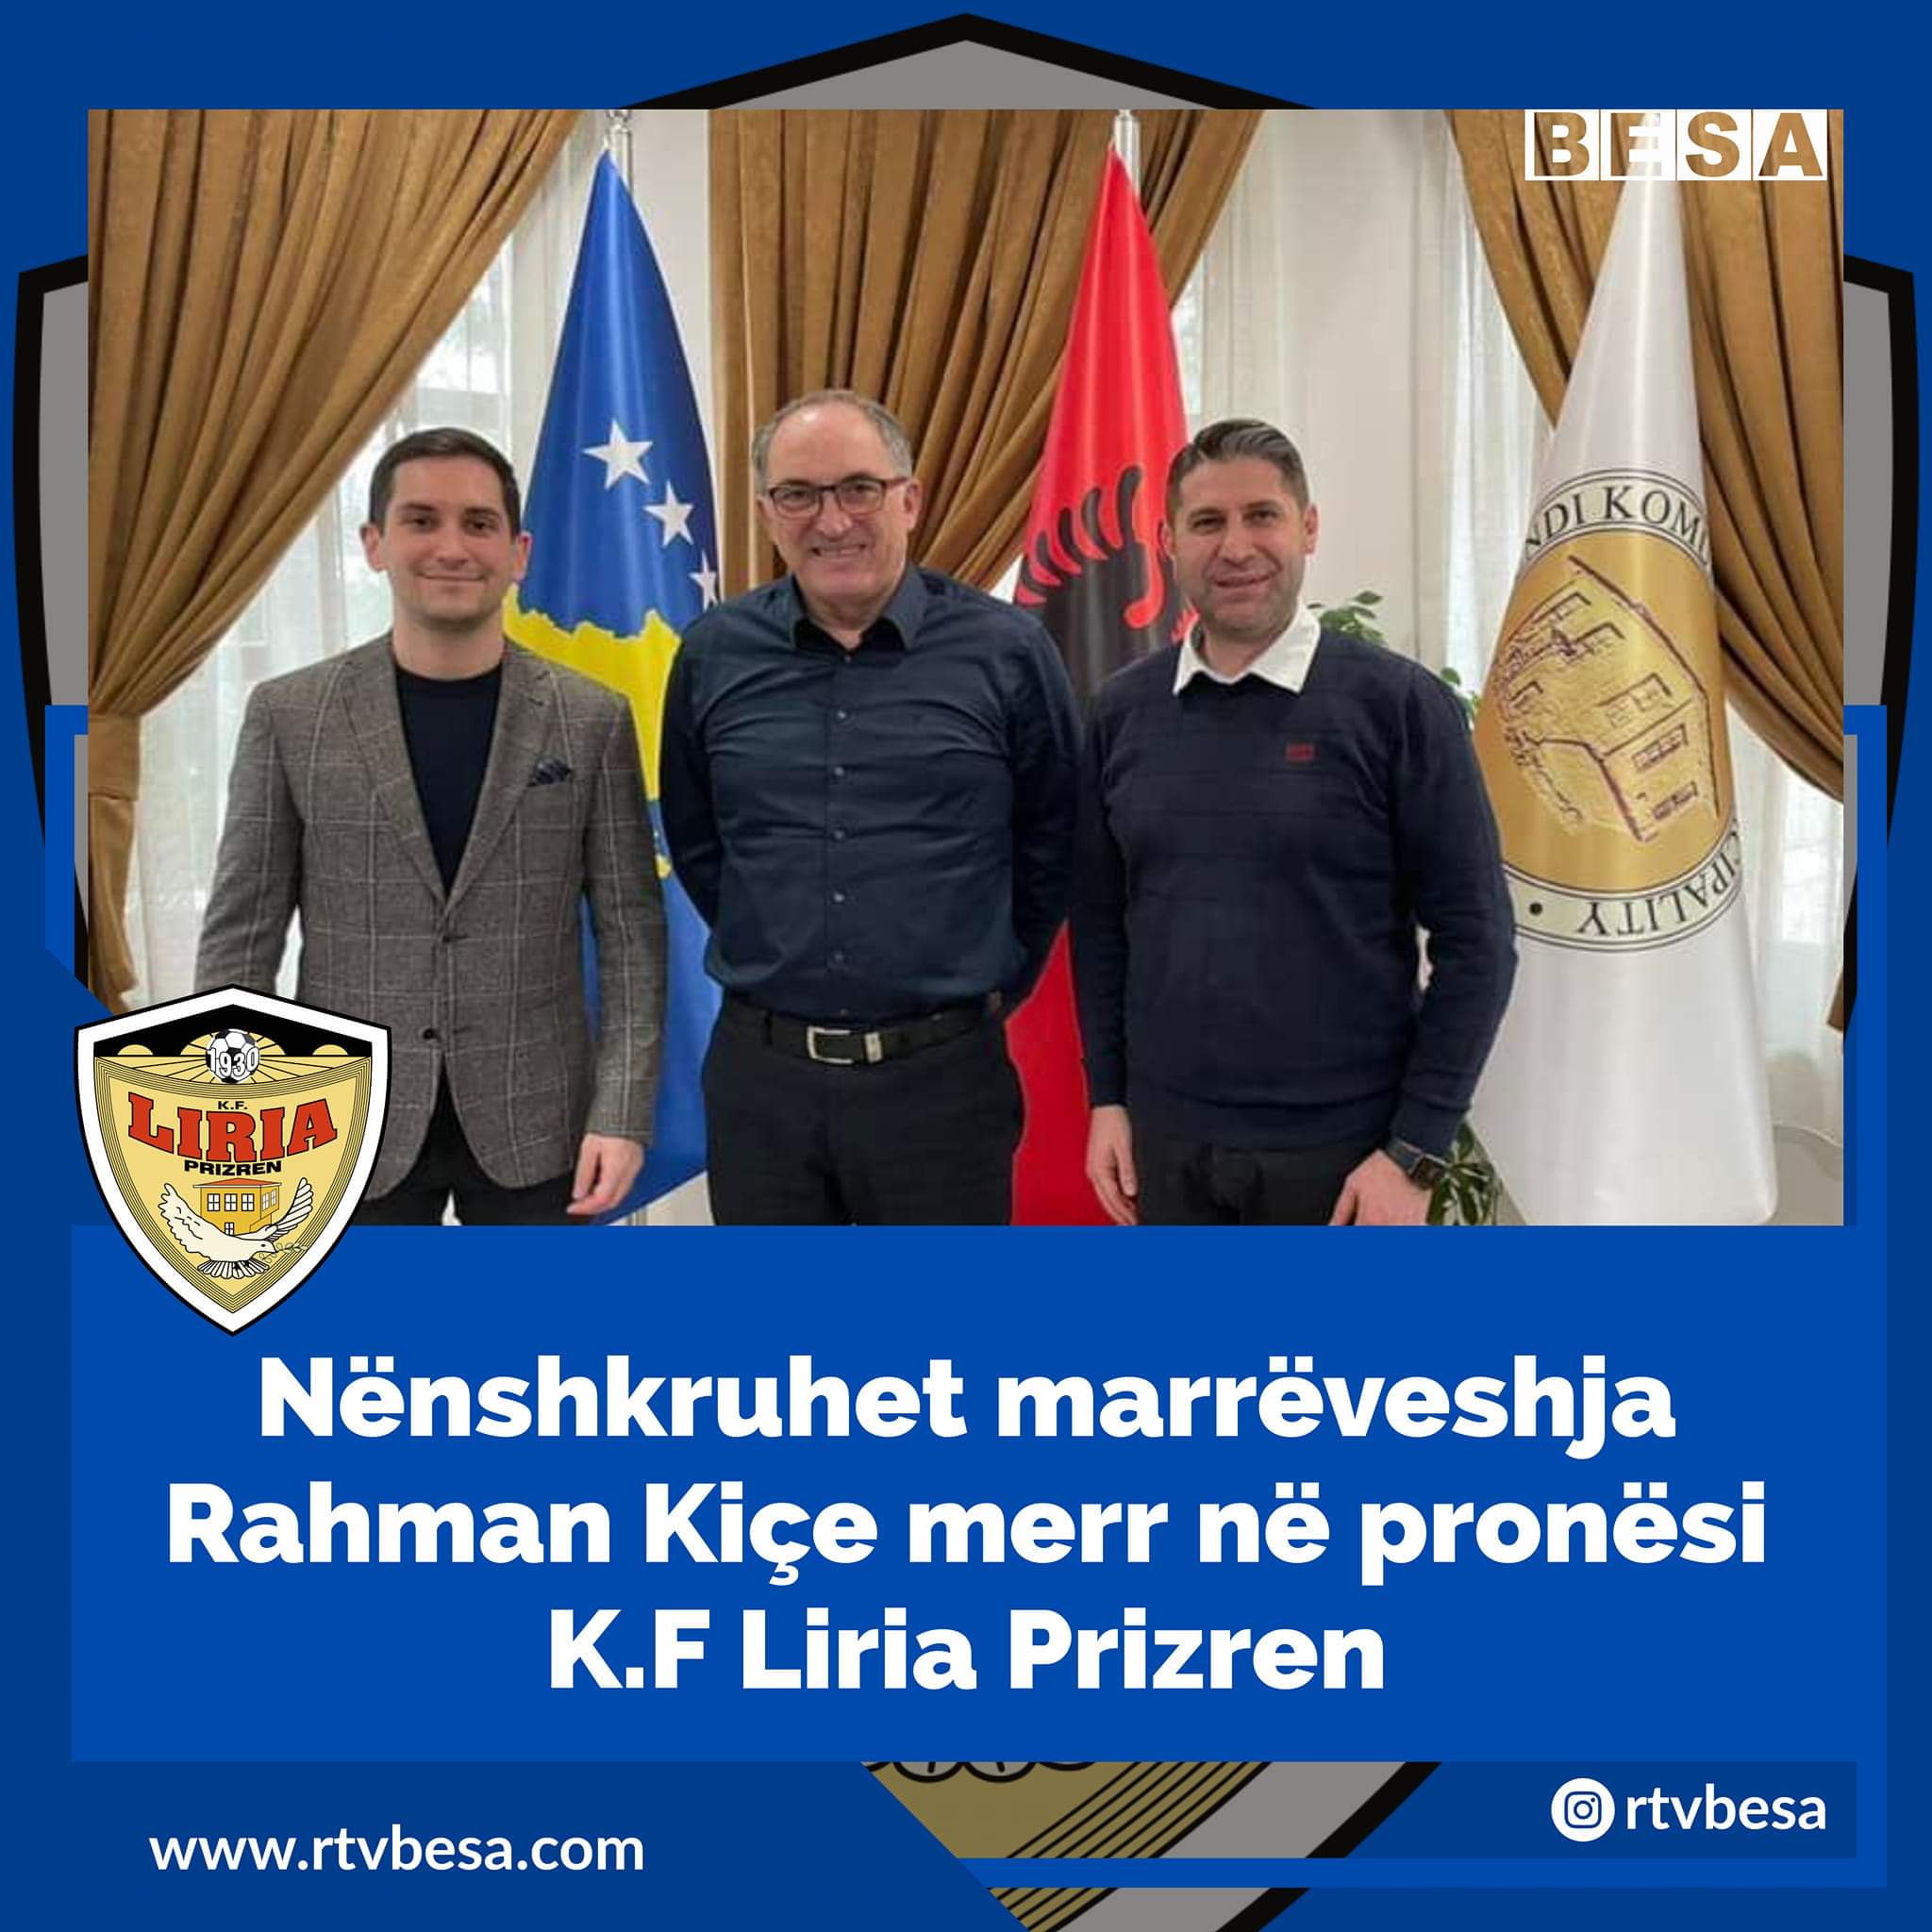 Nënshkruhet marrëveshja Rahman Kiçe merr në pronësi F.C Liria në Prizren